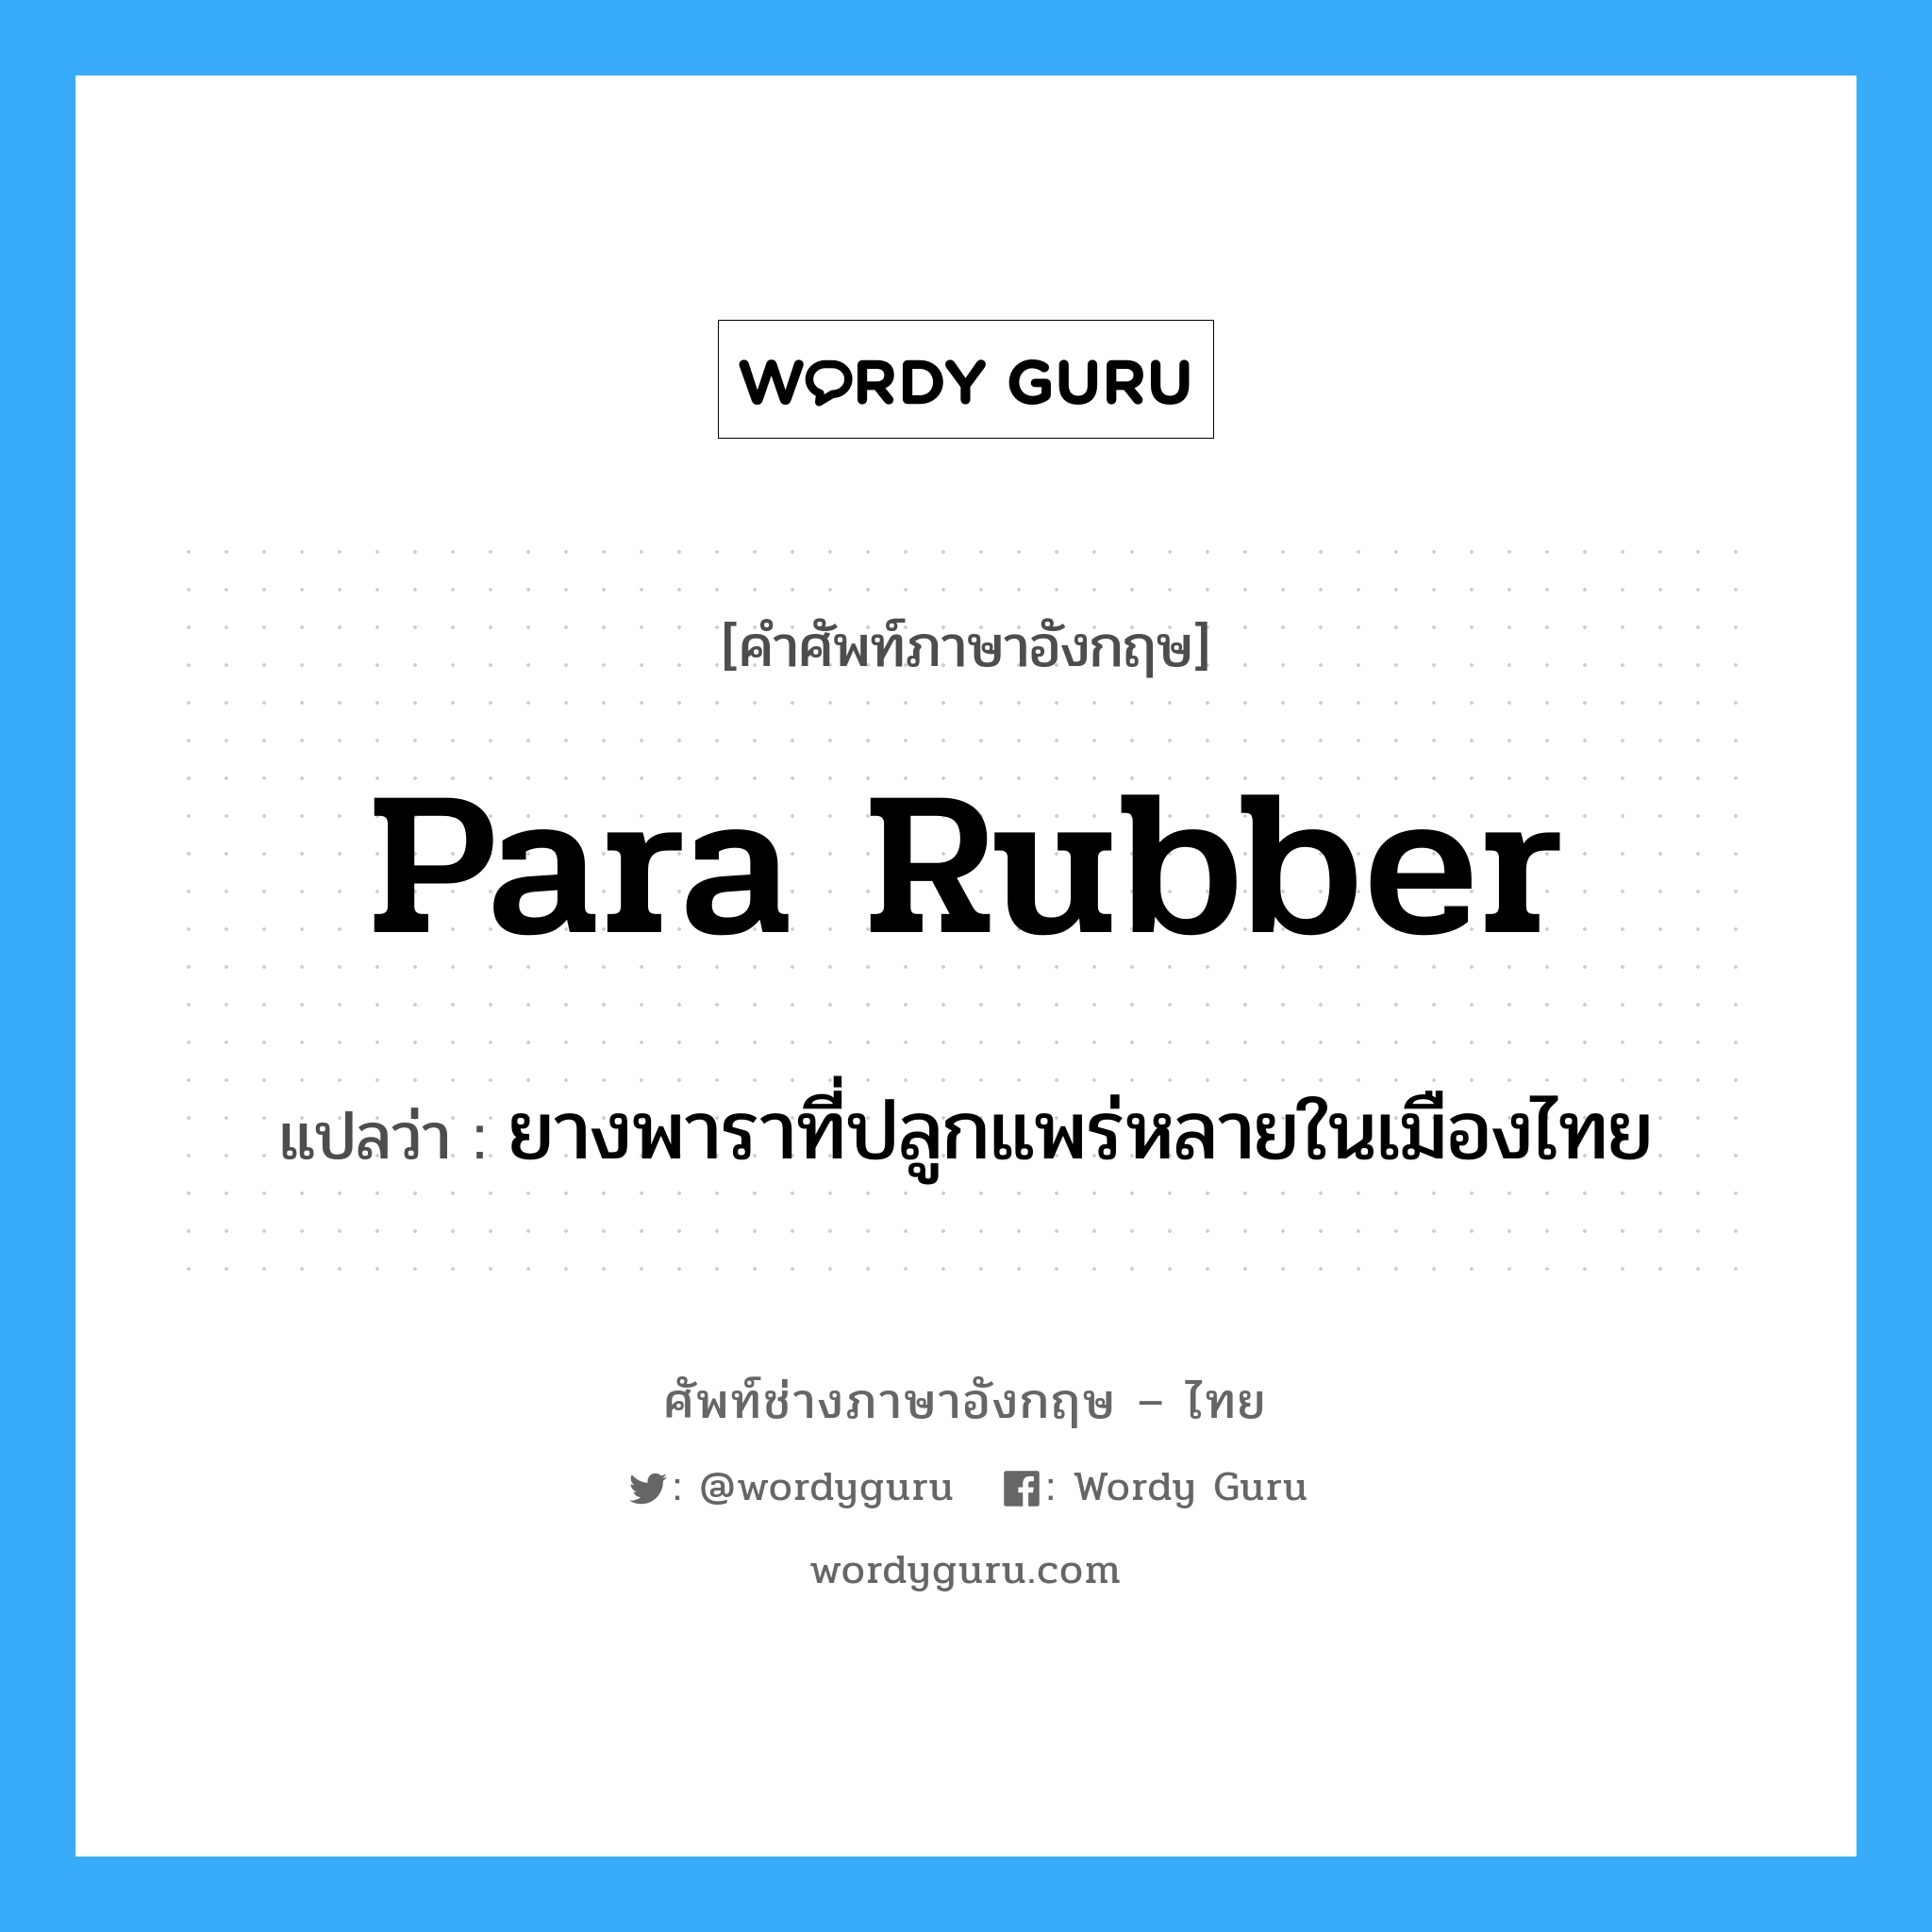 ยางพาราที่ปลูกแพร่หลายในเมืองไทย ภาษาอังกฤษ?, คำศัพท์ช่างภาษาอังกฤษ - ไทย ยางพาราที่ปลูกแพร่หลายในเมืองไทย คำศัพท์ภาษาอังกฤษ ยางพาราที่ปลูกแพร่หลายในเมืองไทย แปลว่า Para rubber